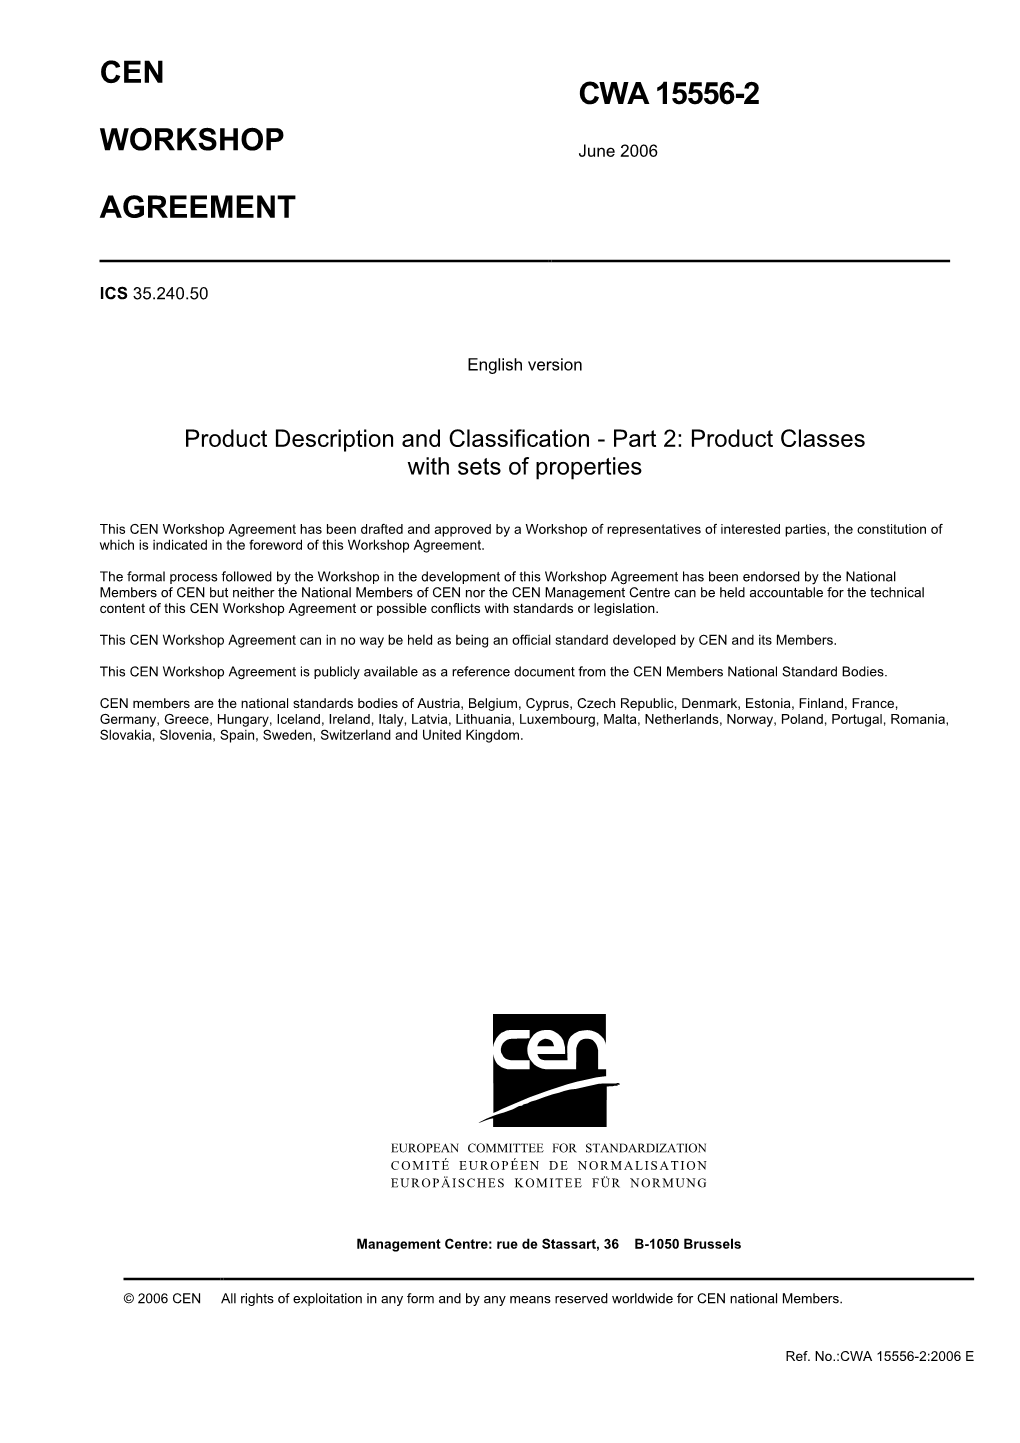 Cen Workshop Agreement Cwa 15556-2